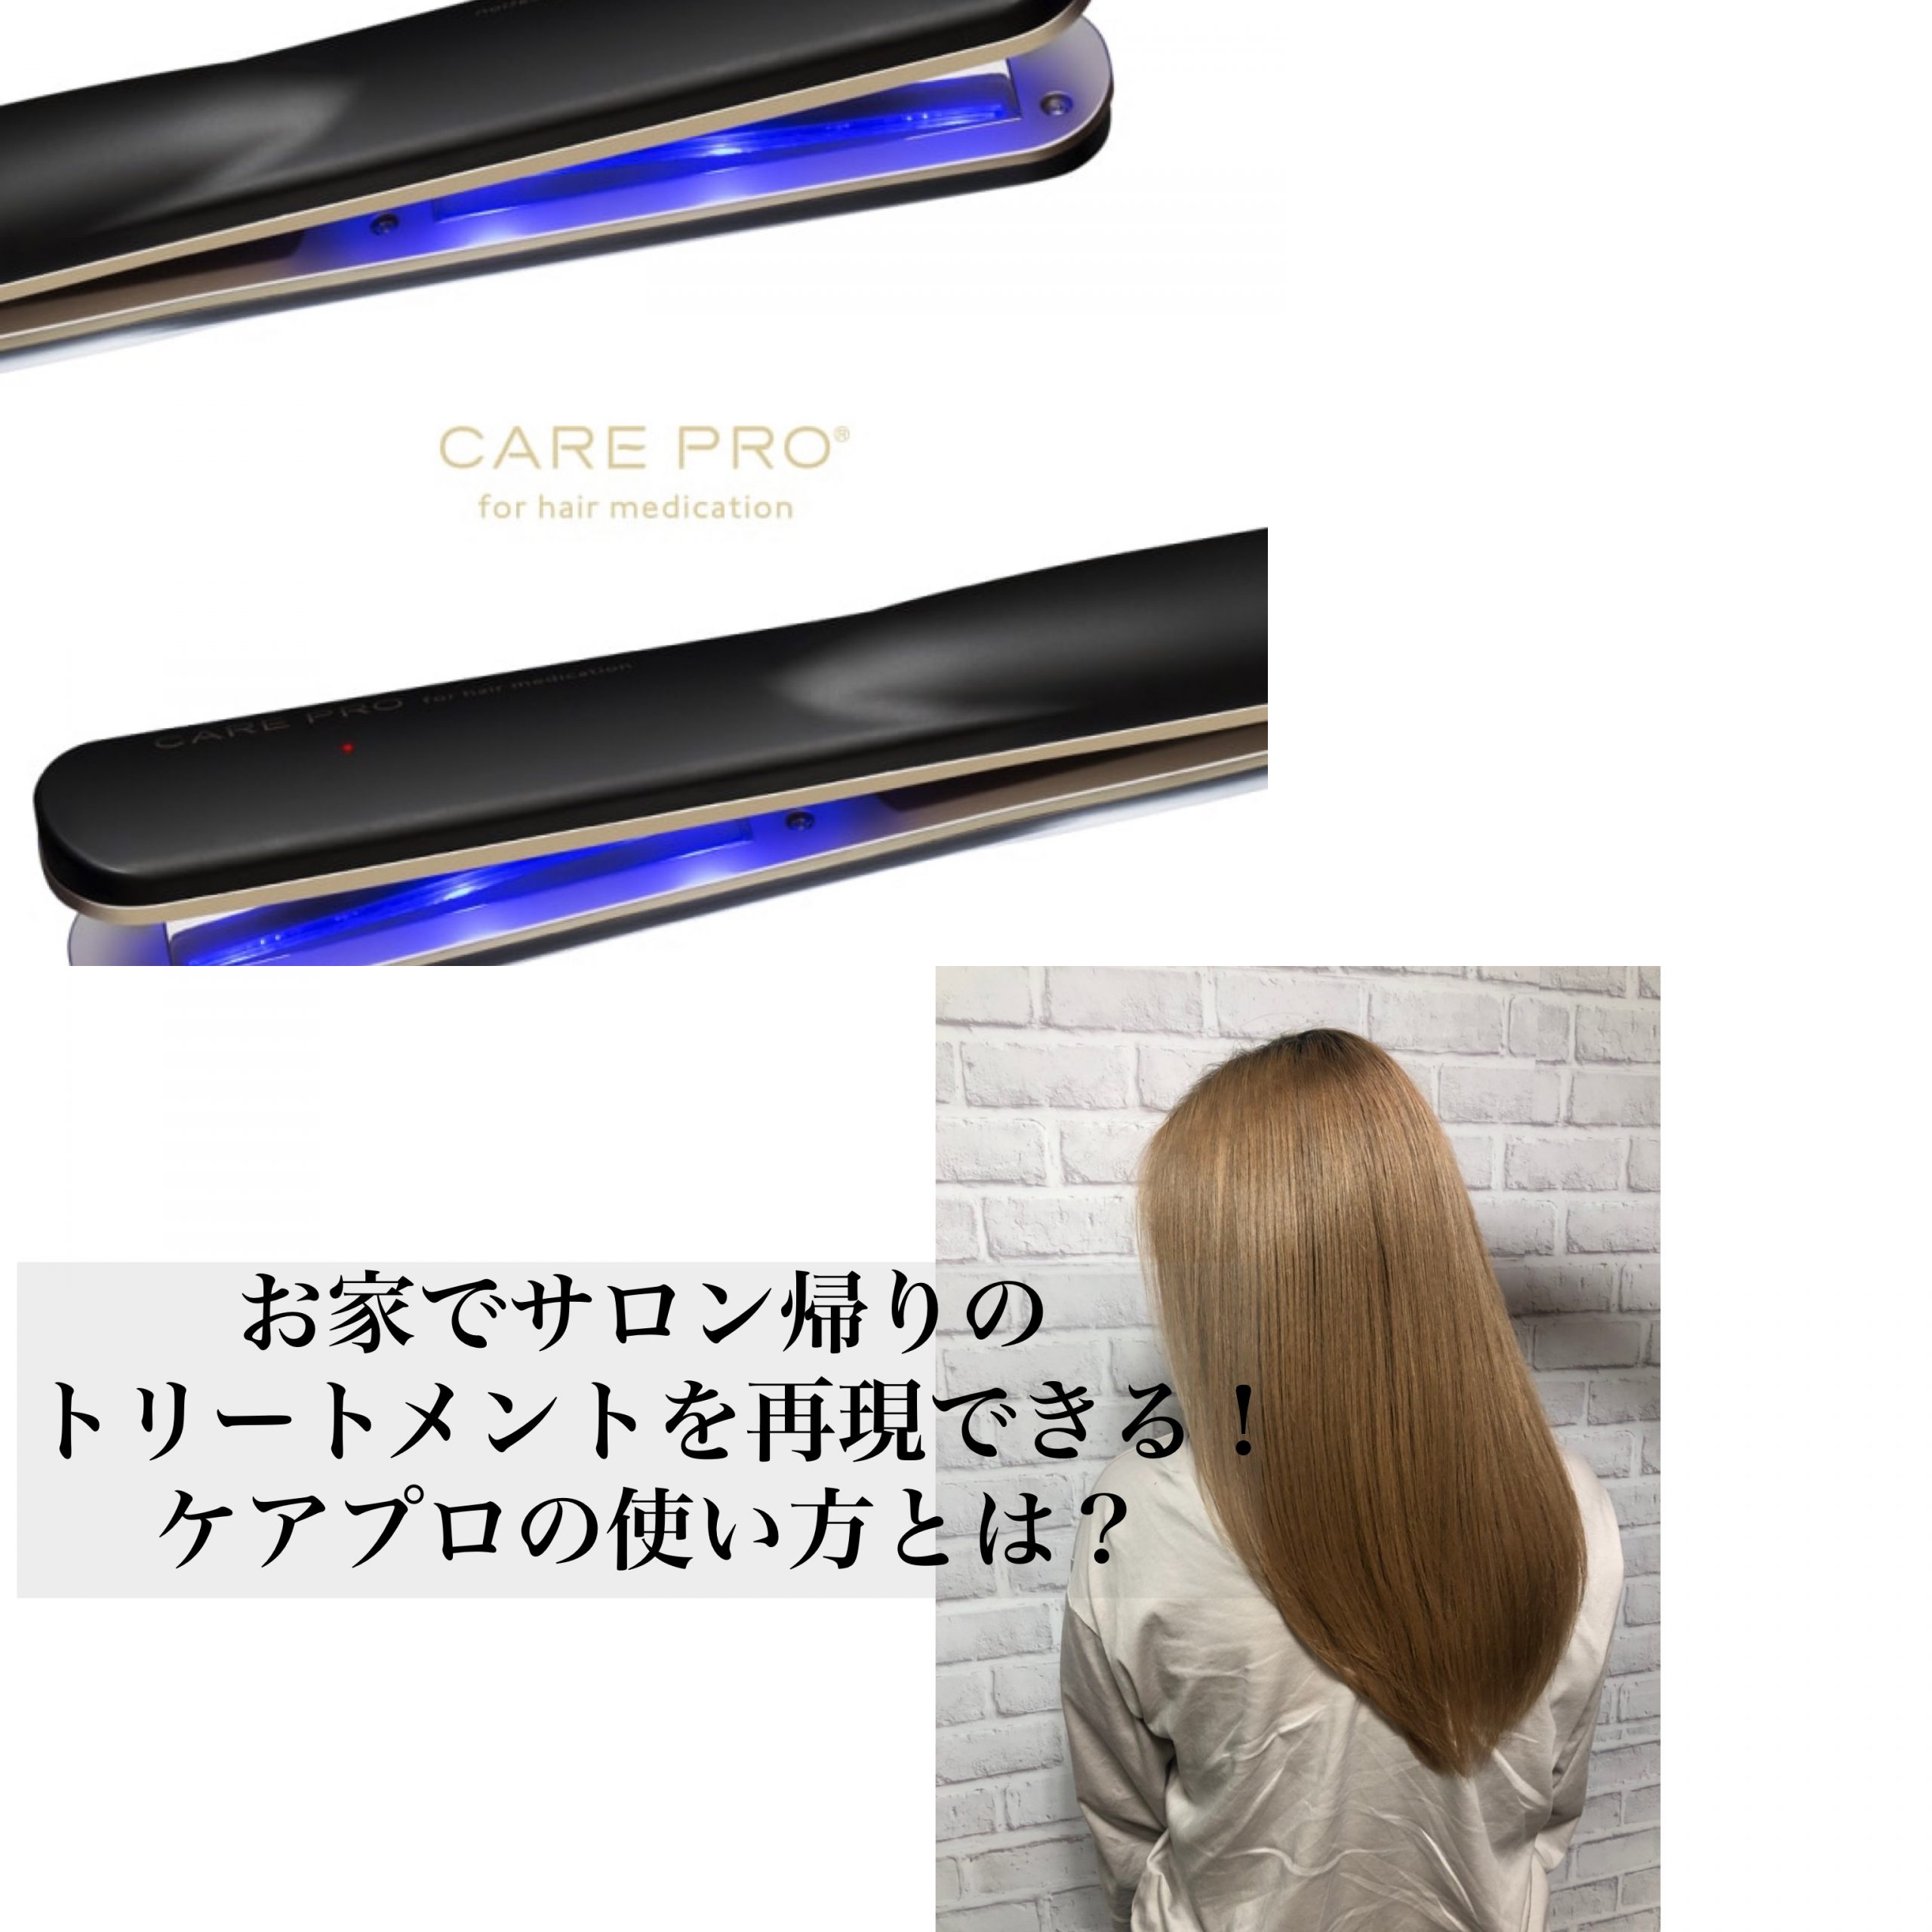 奈良で髪質改善 超音波アイロン ケアプロ の効果的な使用方法 奈良 京都 大阪の美容室 ハピネス